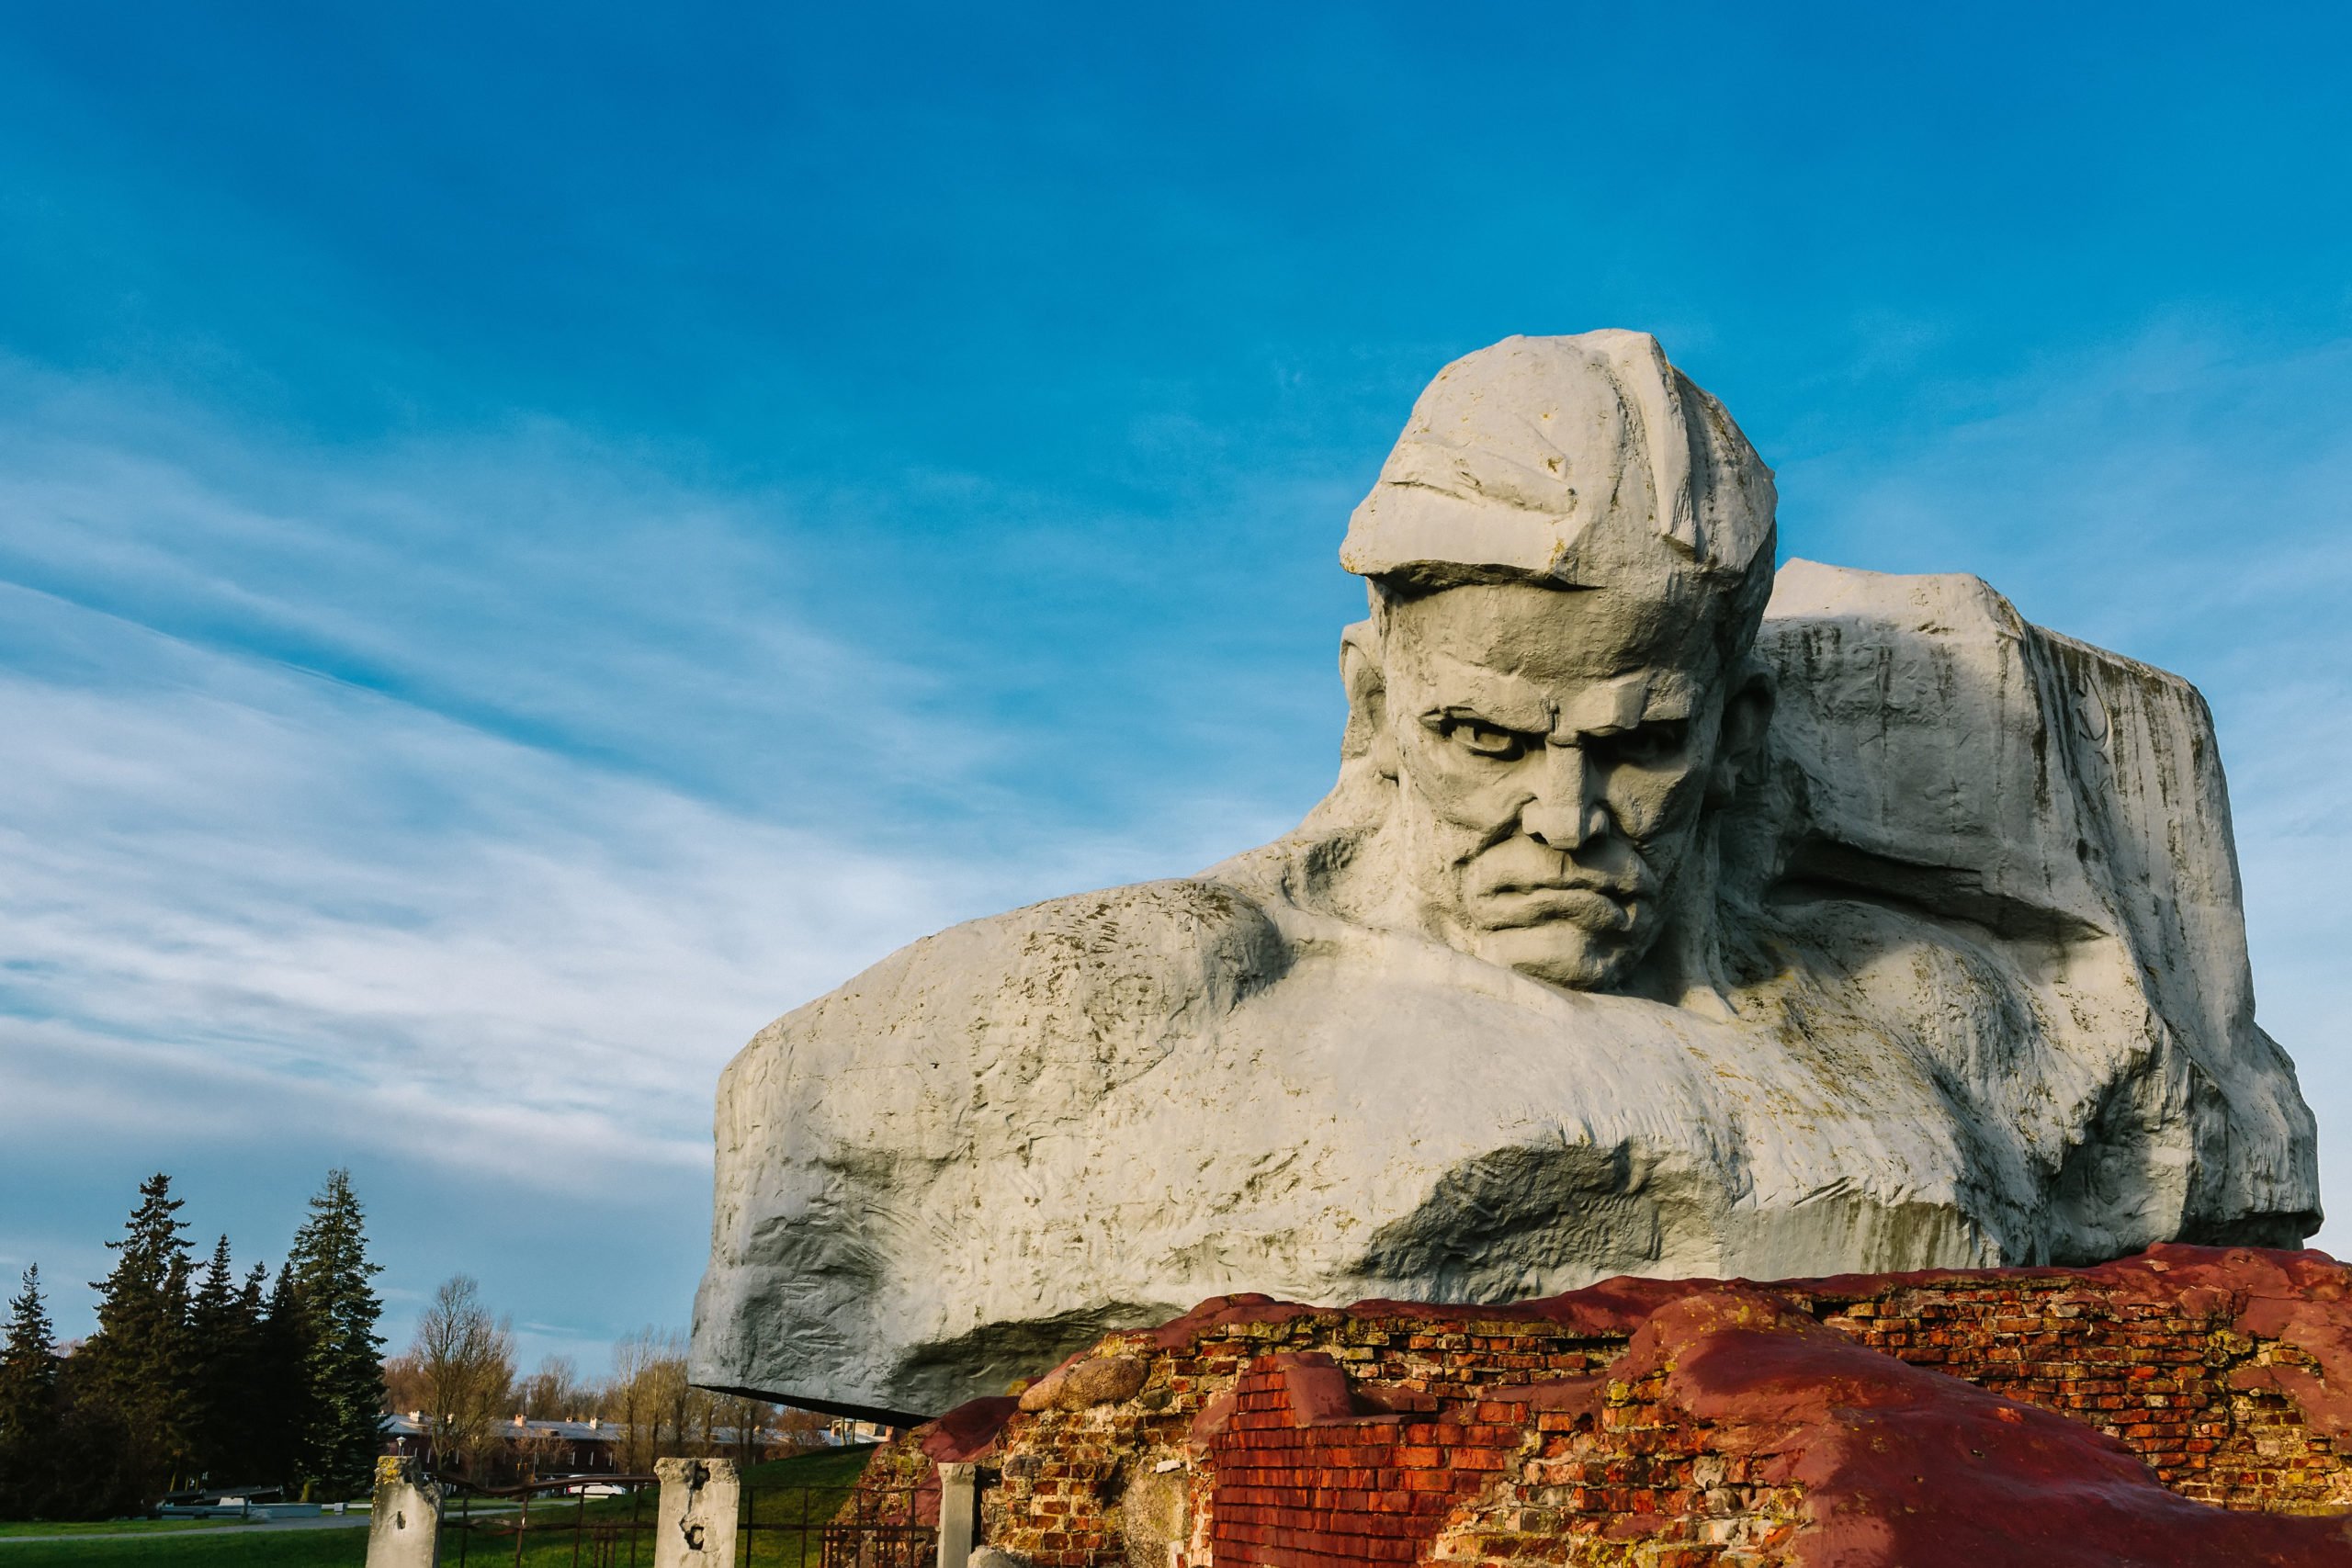 Giant Head. Brest in Belarus. From Shutterstock - By dulebenets